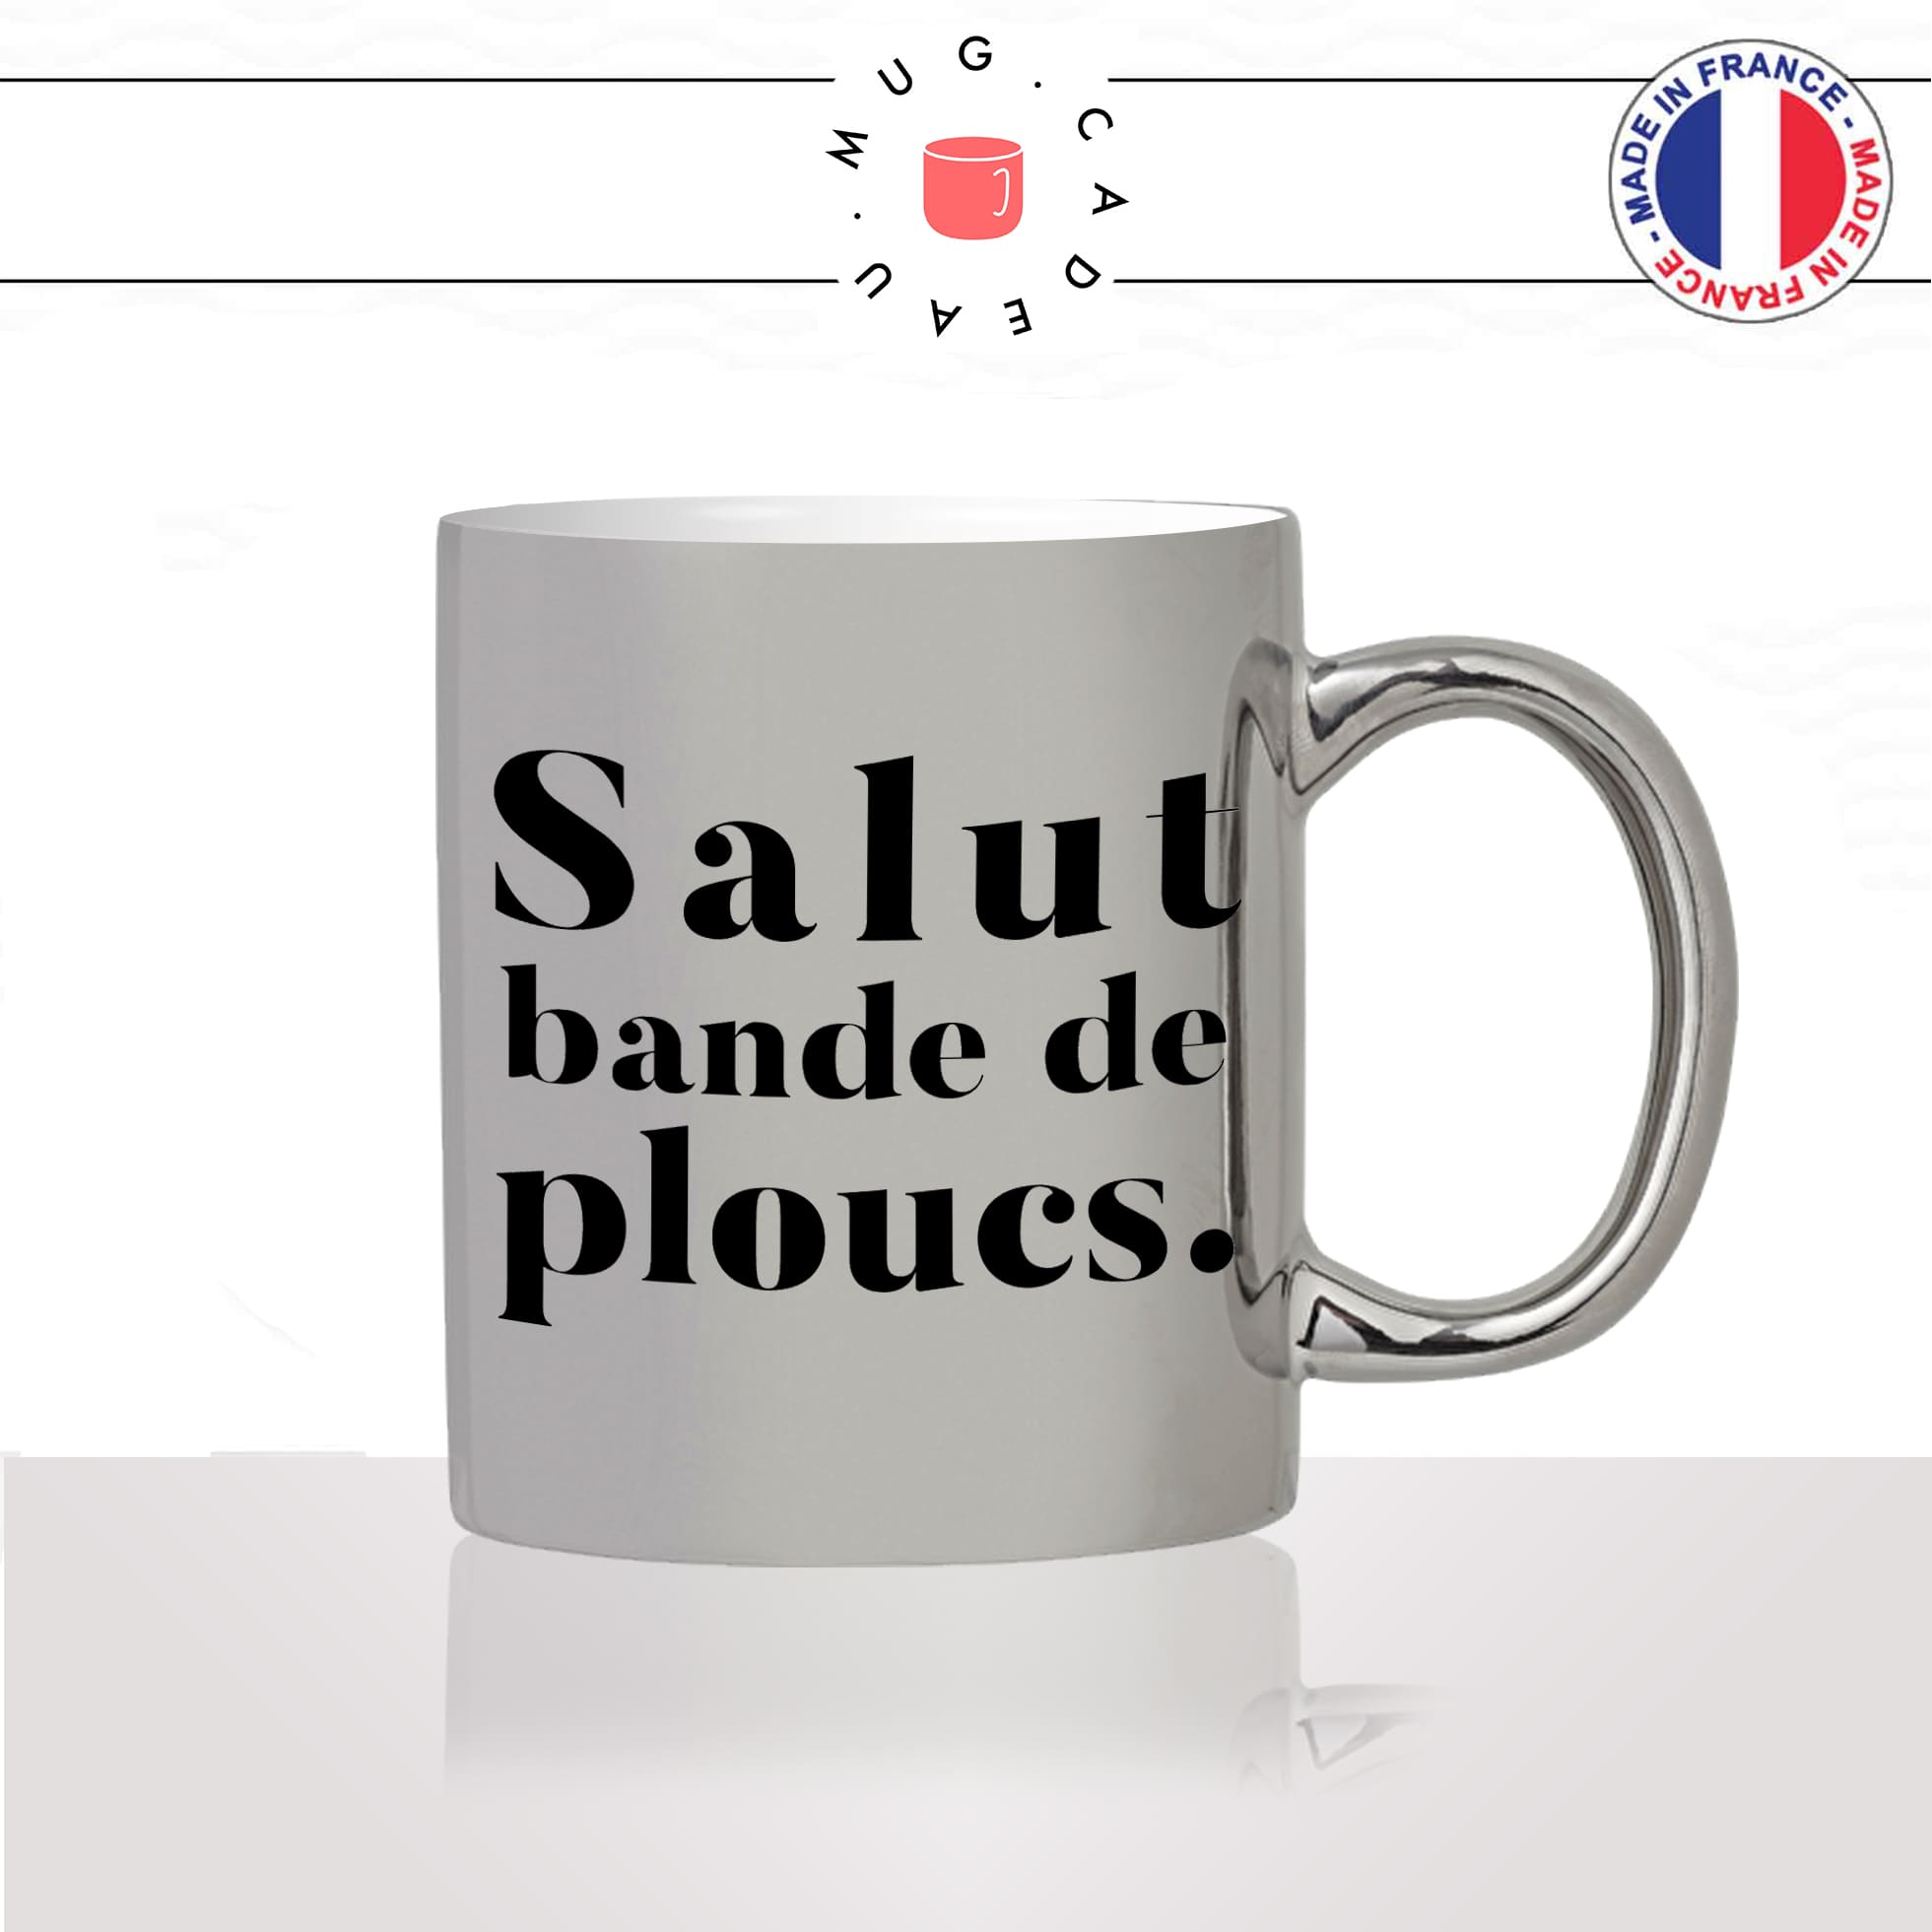 mug-tasse-argent-argenté-silver-salut-bande-de-ploucs-collegue-bureau-paris-copines-femme-homme-idée-cadeau-fun-cool-café-thé-original2